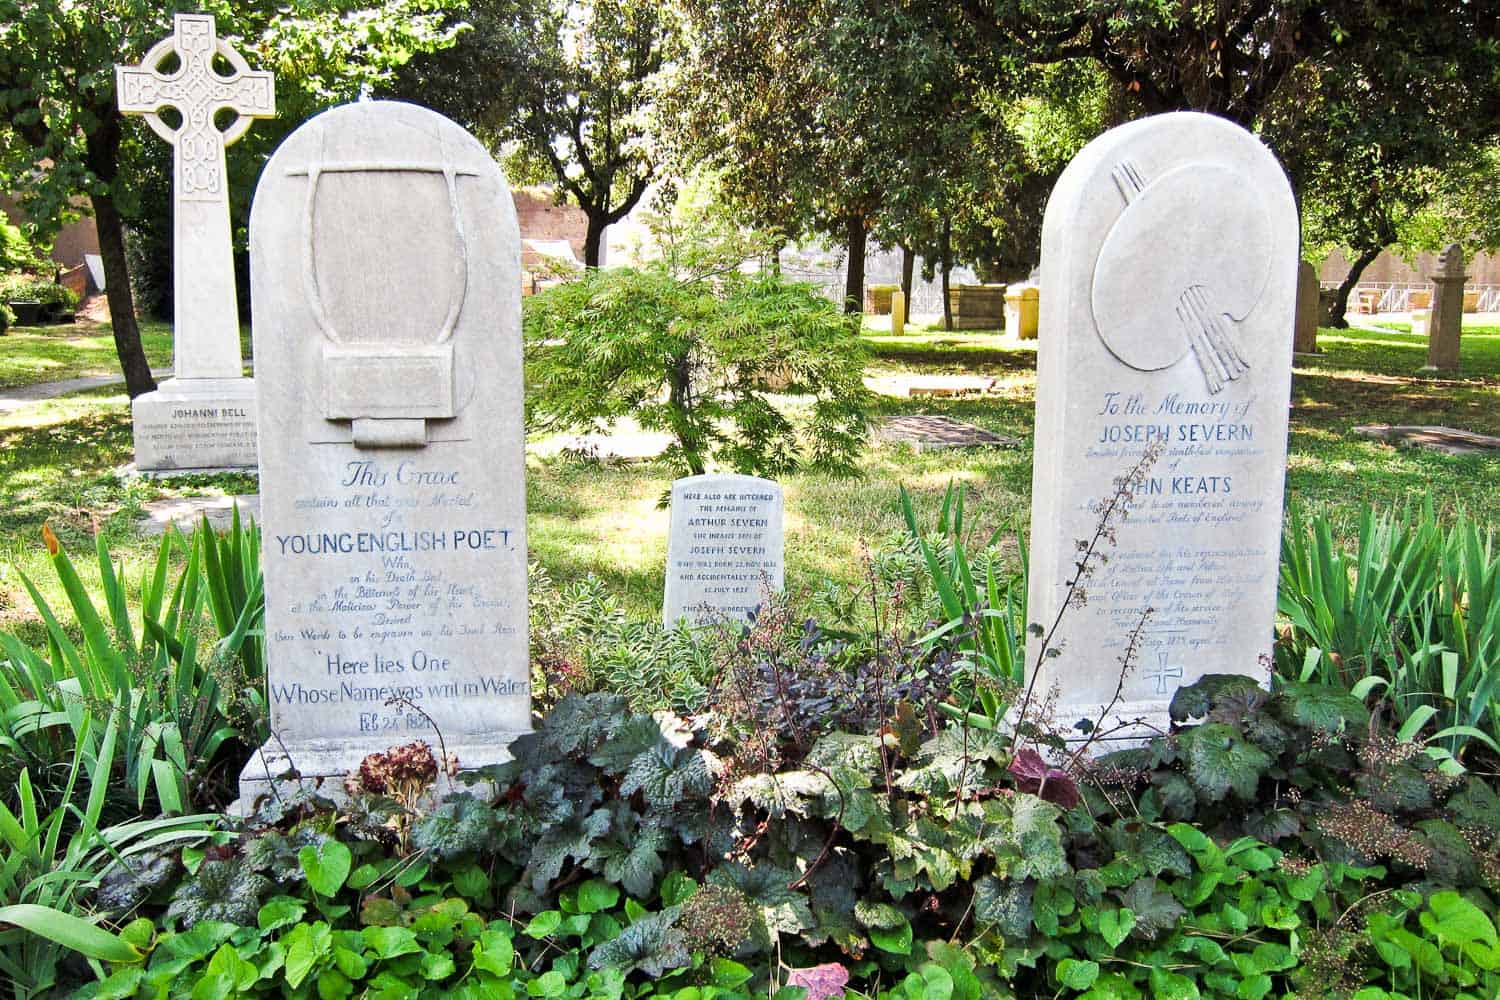 Keats' grave in the non-Catholic cemetery Campo Cestio in Testaccio, Rome